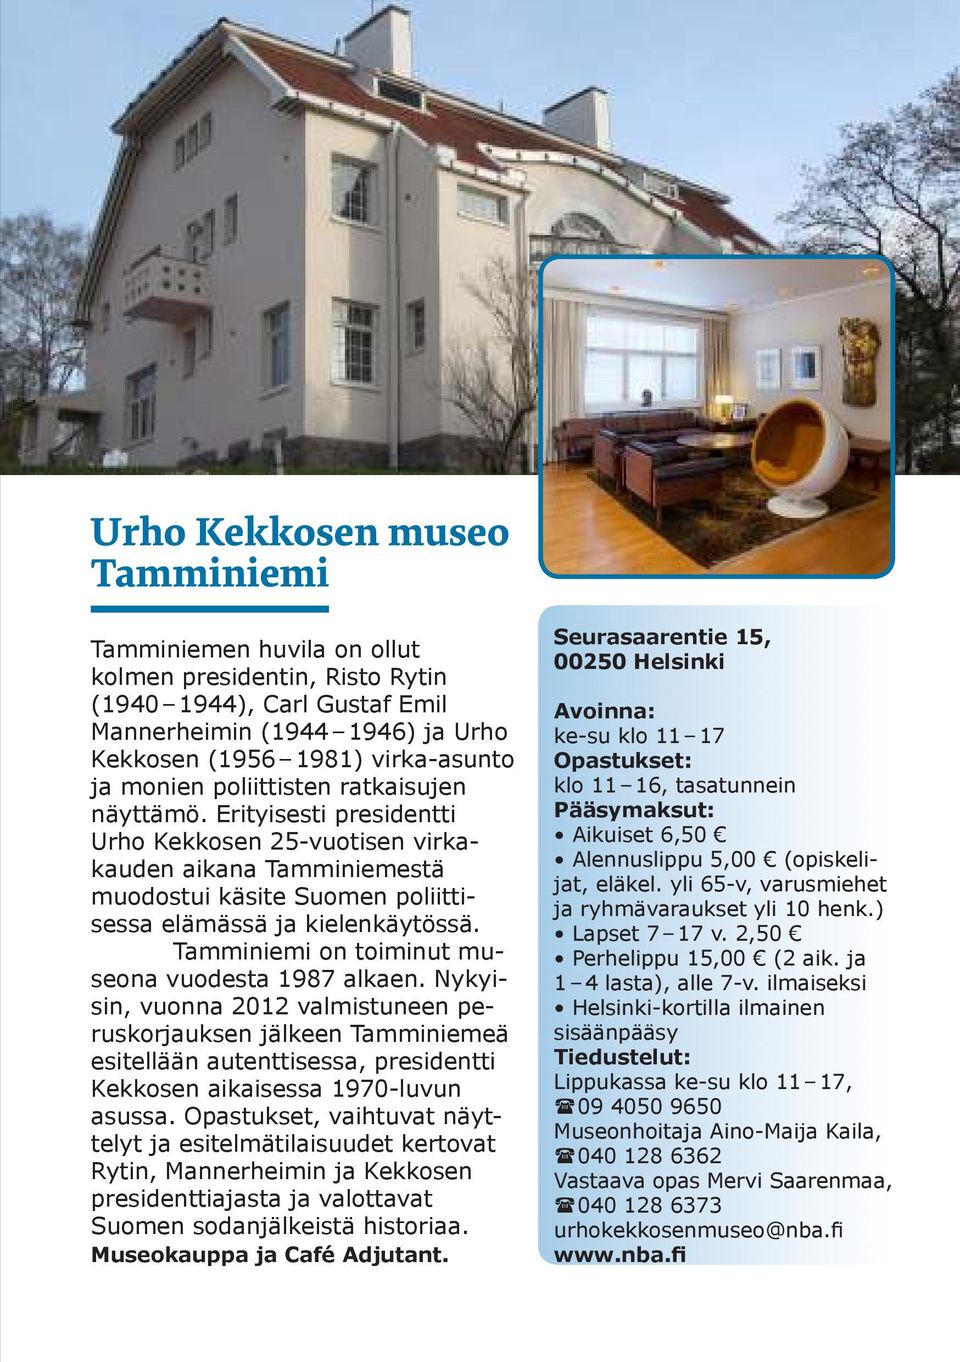 Tamminiemi on toiminut museona vuodesta 1987 alkaen. Nykyisin, vuonna 2012 valmistuneen peruskorjauksen jälkeen Tamminiemeä esitellään autenttisessa, presidentti Kekkosen aikaisessa 1970-luvun asussa.